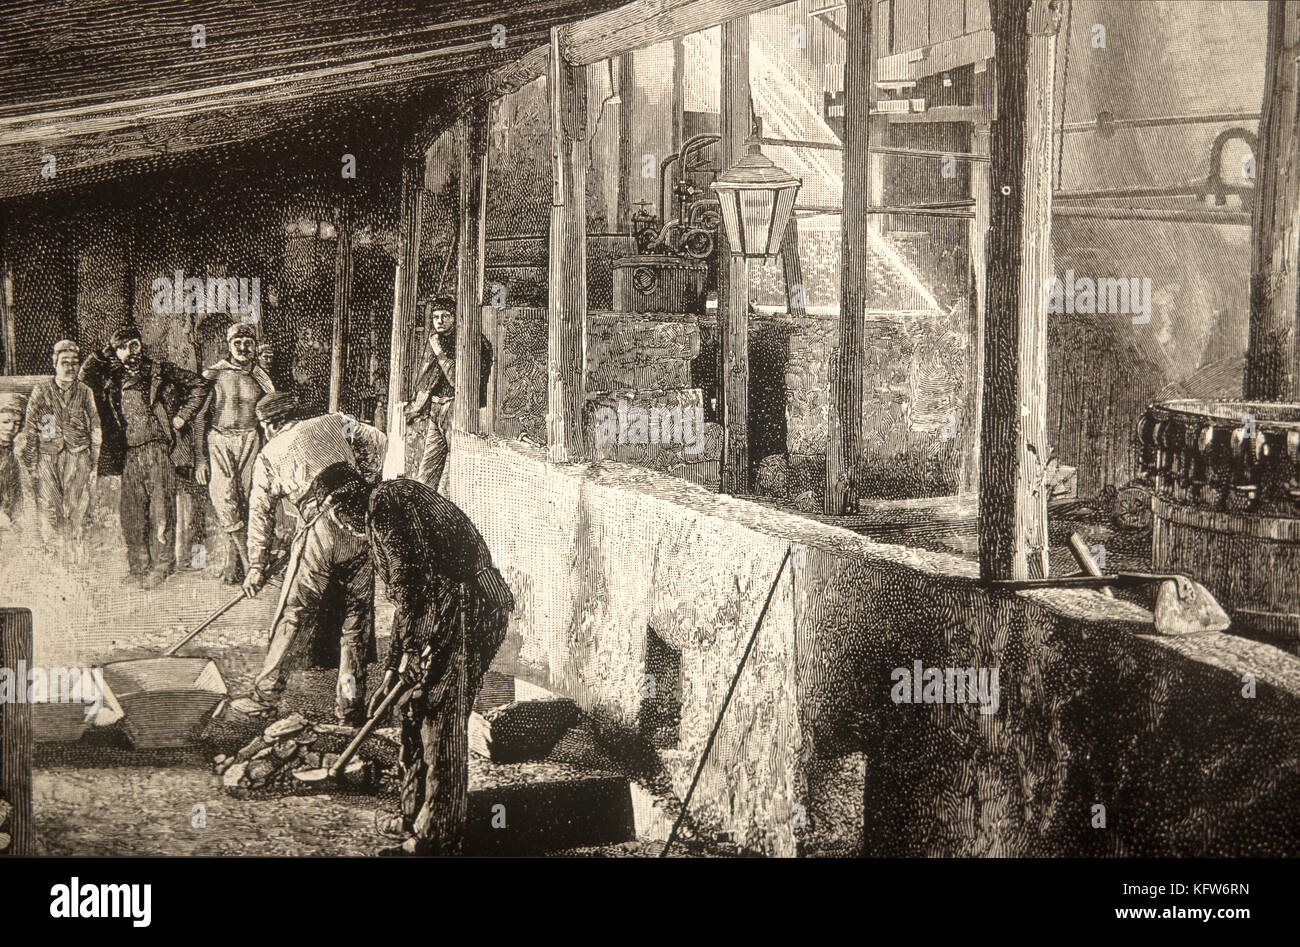 Italy Sicily - Lercarafriddi - sulfur mine 1894 - E. Ximenes Stock Photo